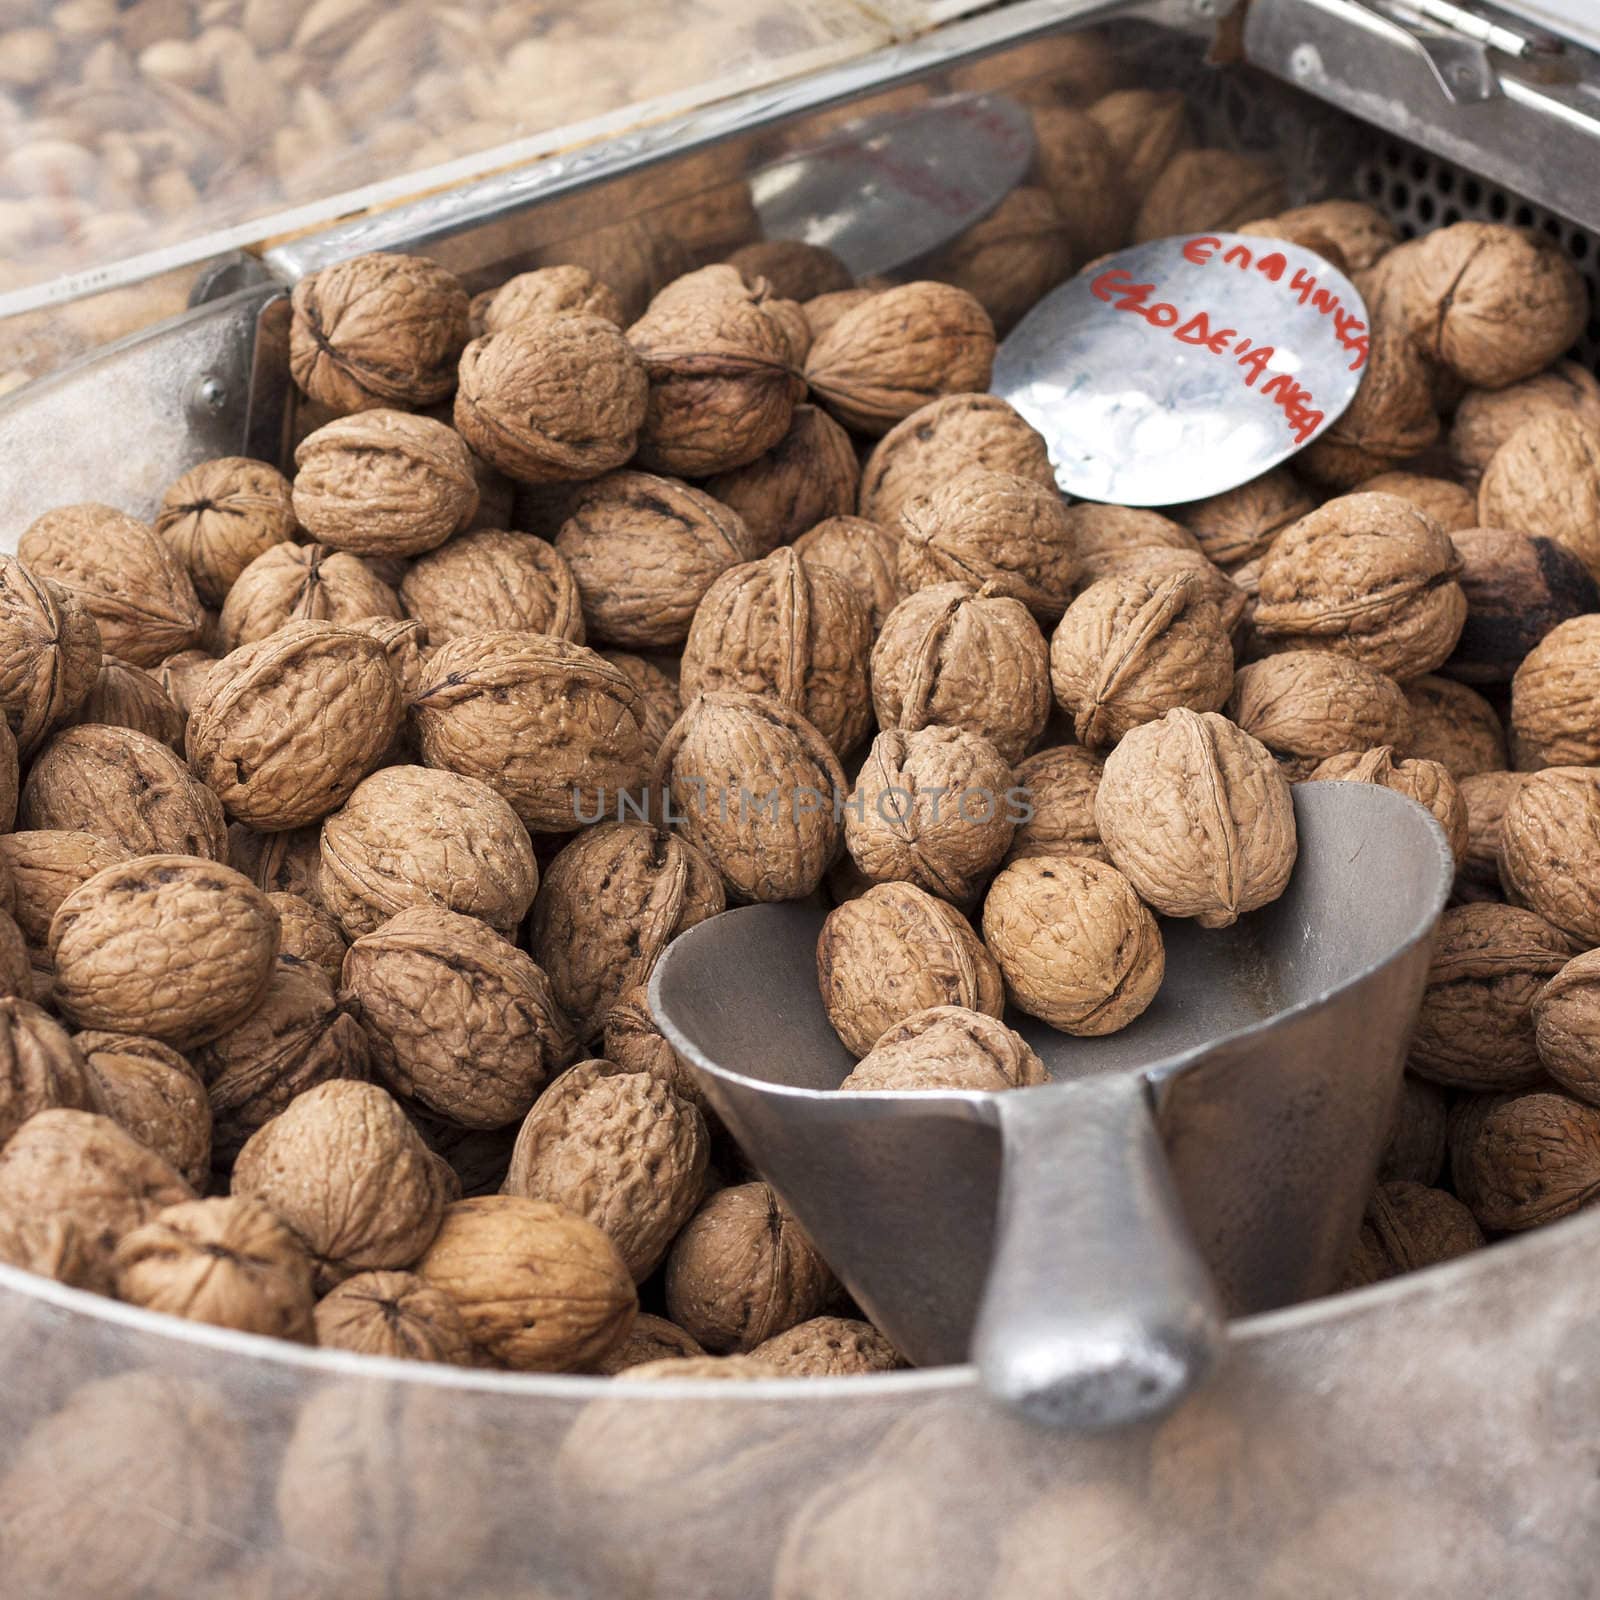 Greek walnuts on display at a Greek market stall.